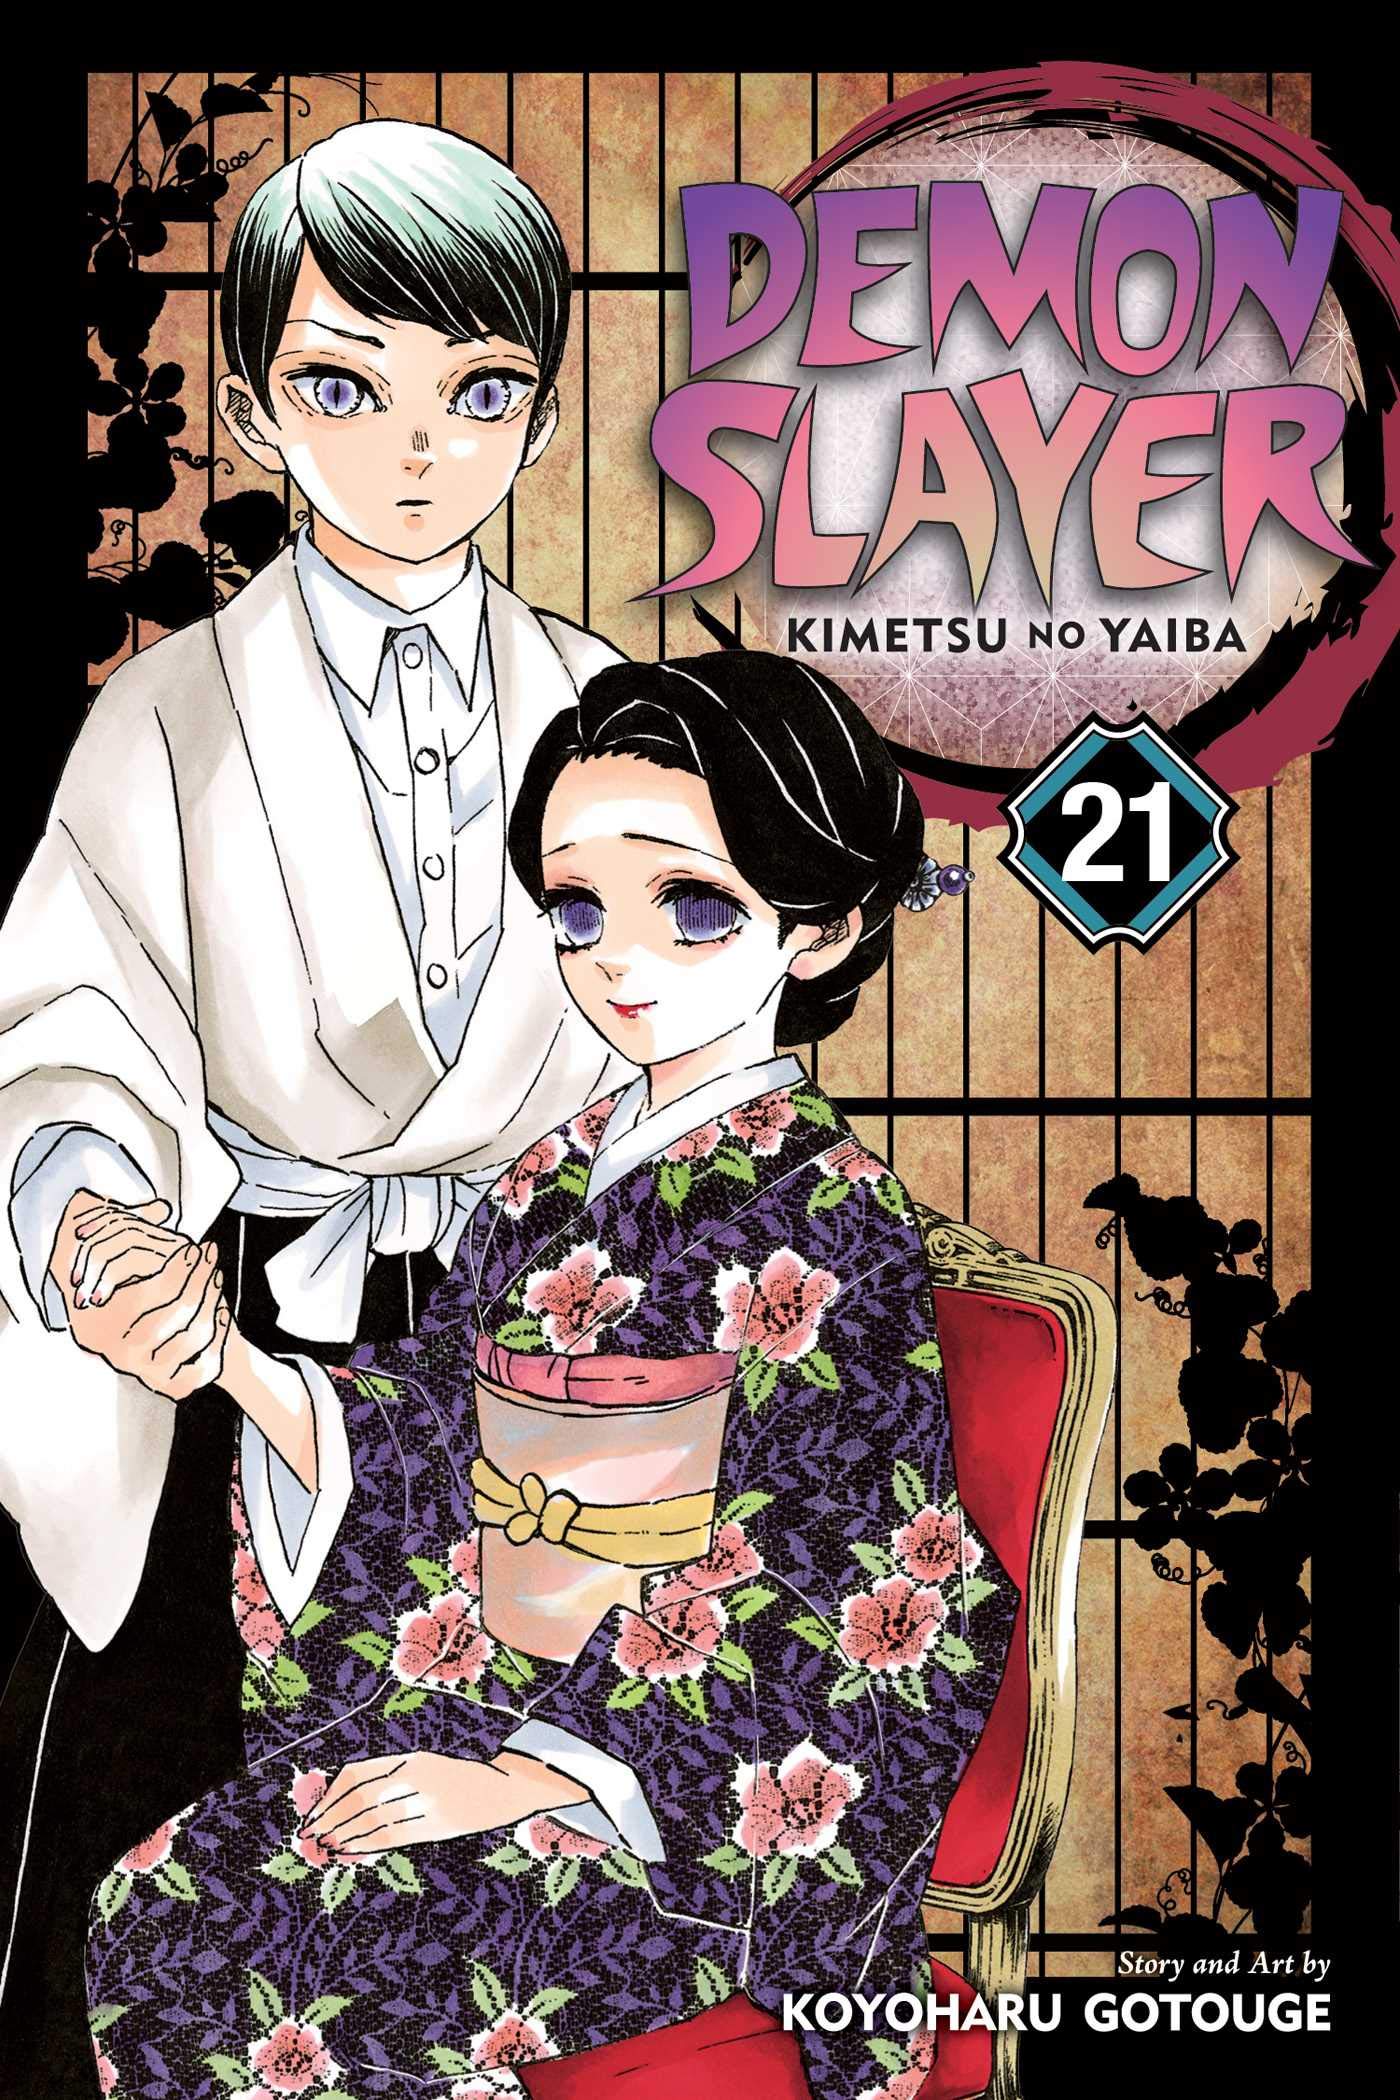 Demon Slayer: Kimetsu no Yaiba - Volume 21 | Koyoharu Gotouge